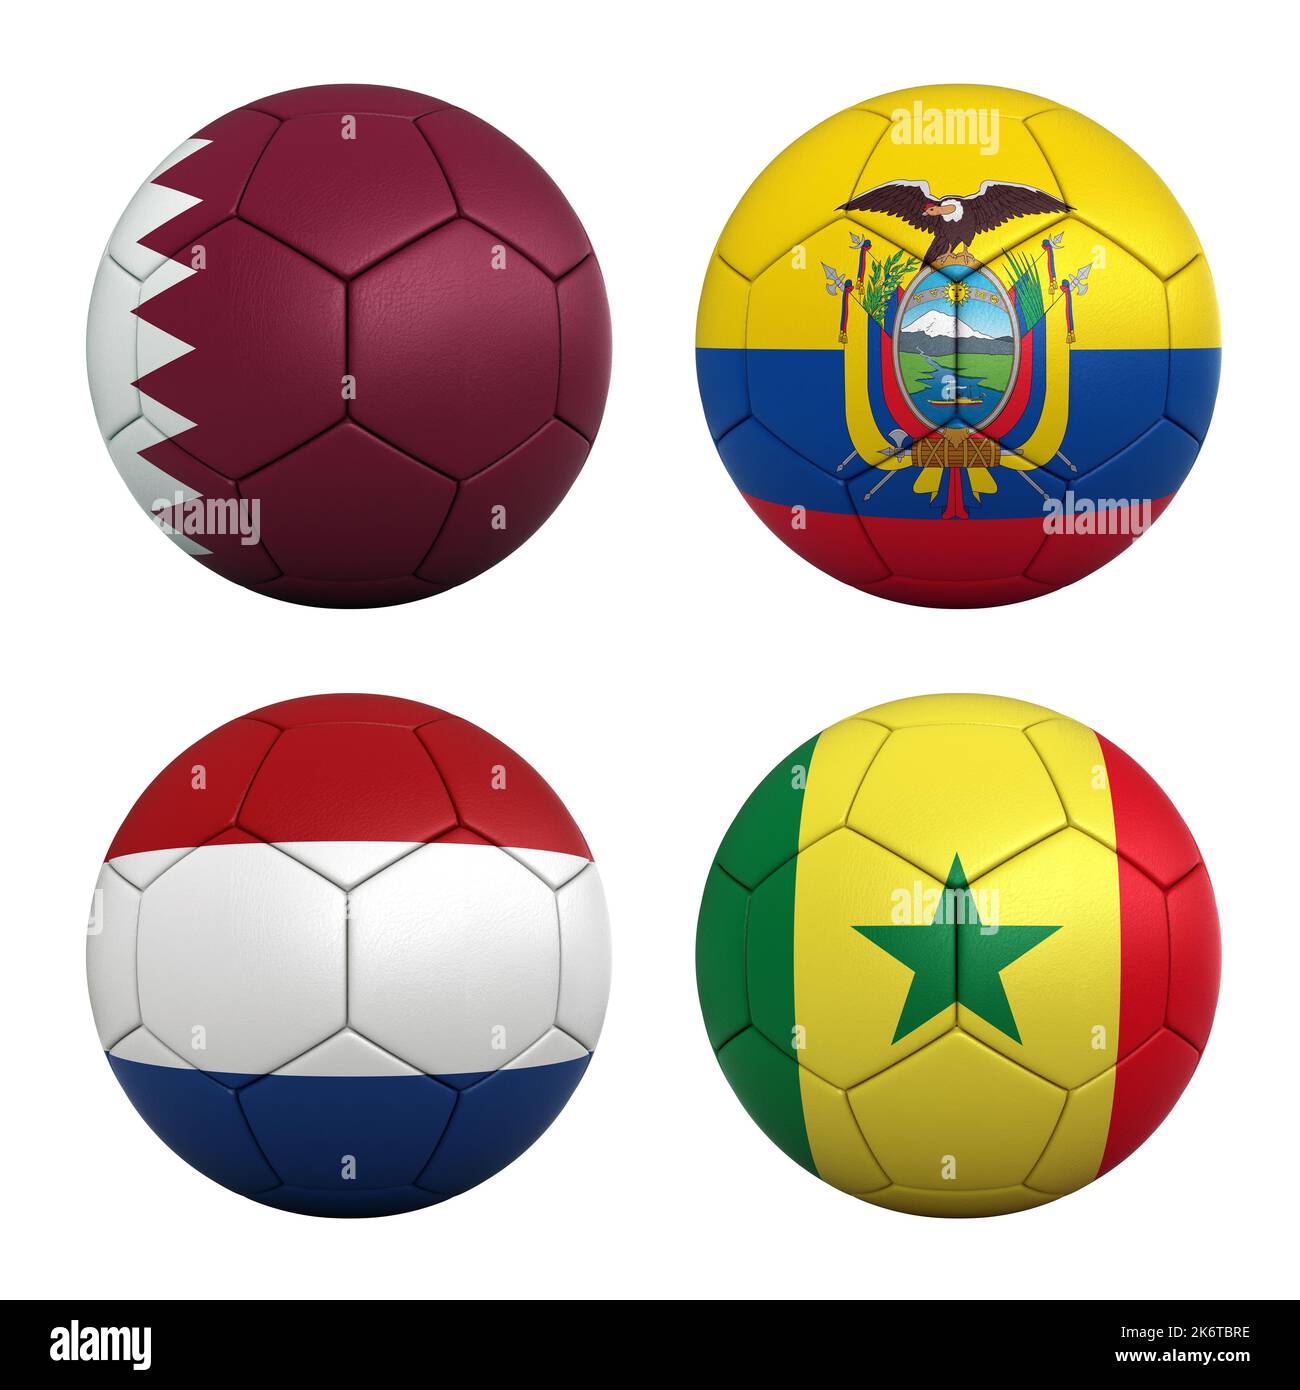 Fußballbälle mit den Flaggen der Teams in der Gruppe A der FIFA Fußball-Weltmeisterschaft 2022 - Katar, Ecuador, Nietherland und Senegal Stockfoto